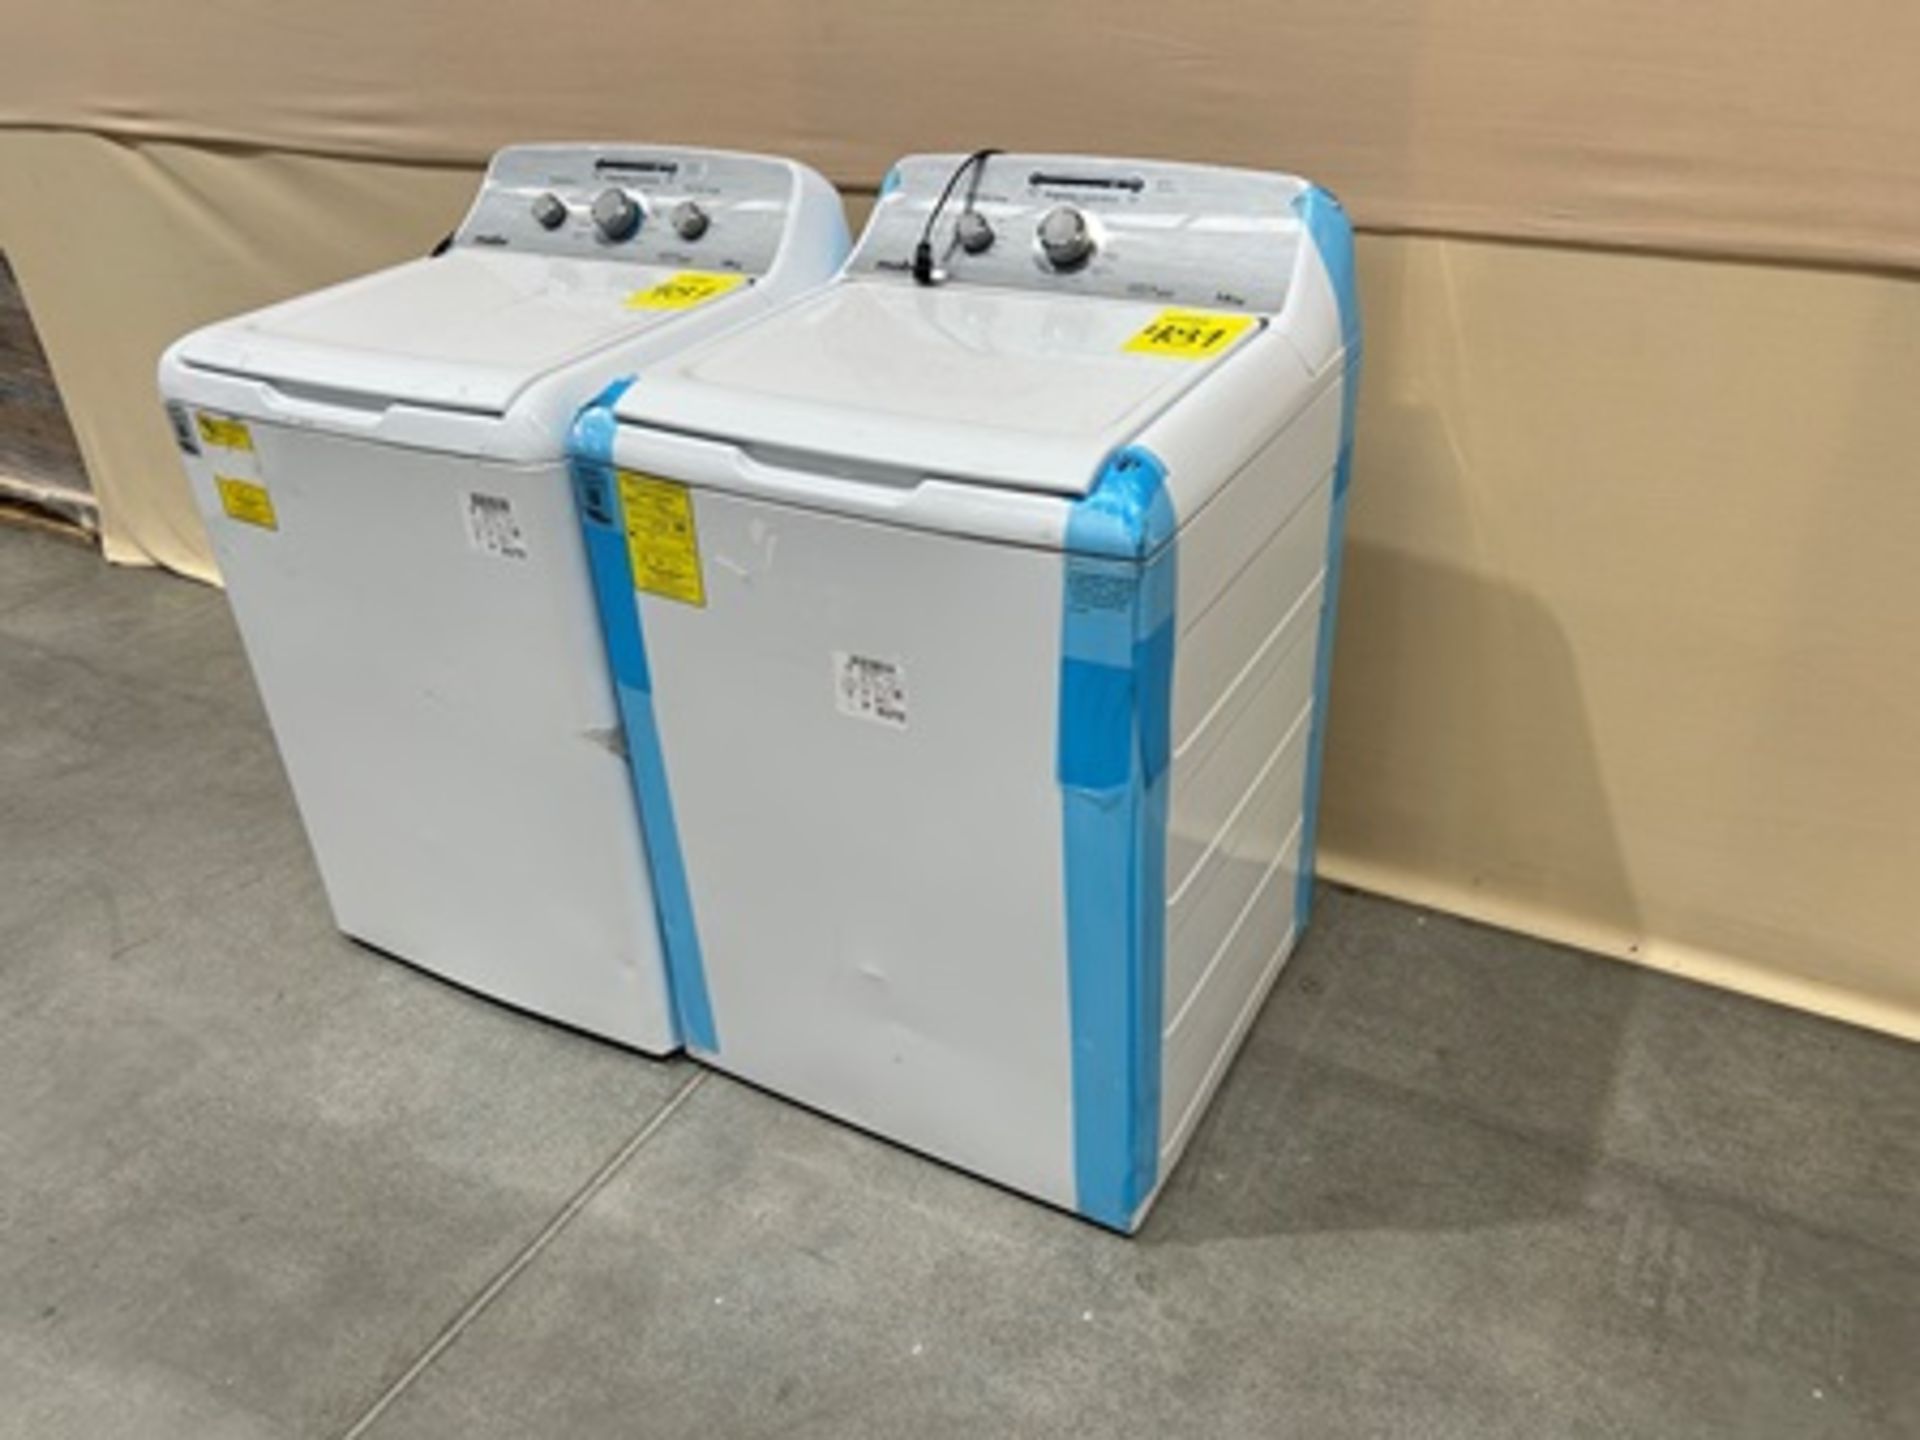 Lote de 2 lavadoras contiene: 1 Lavadora de 18 KG Marca MABE, Modelo LMA78113CBAB01, Serie S45302, - Image 3 of 10